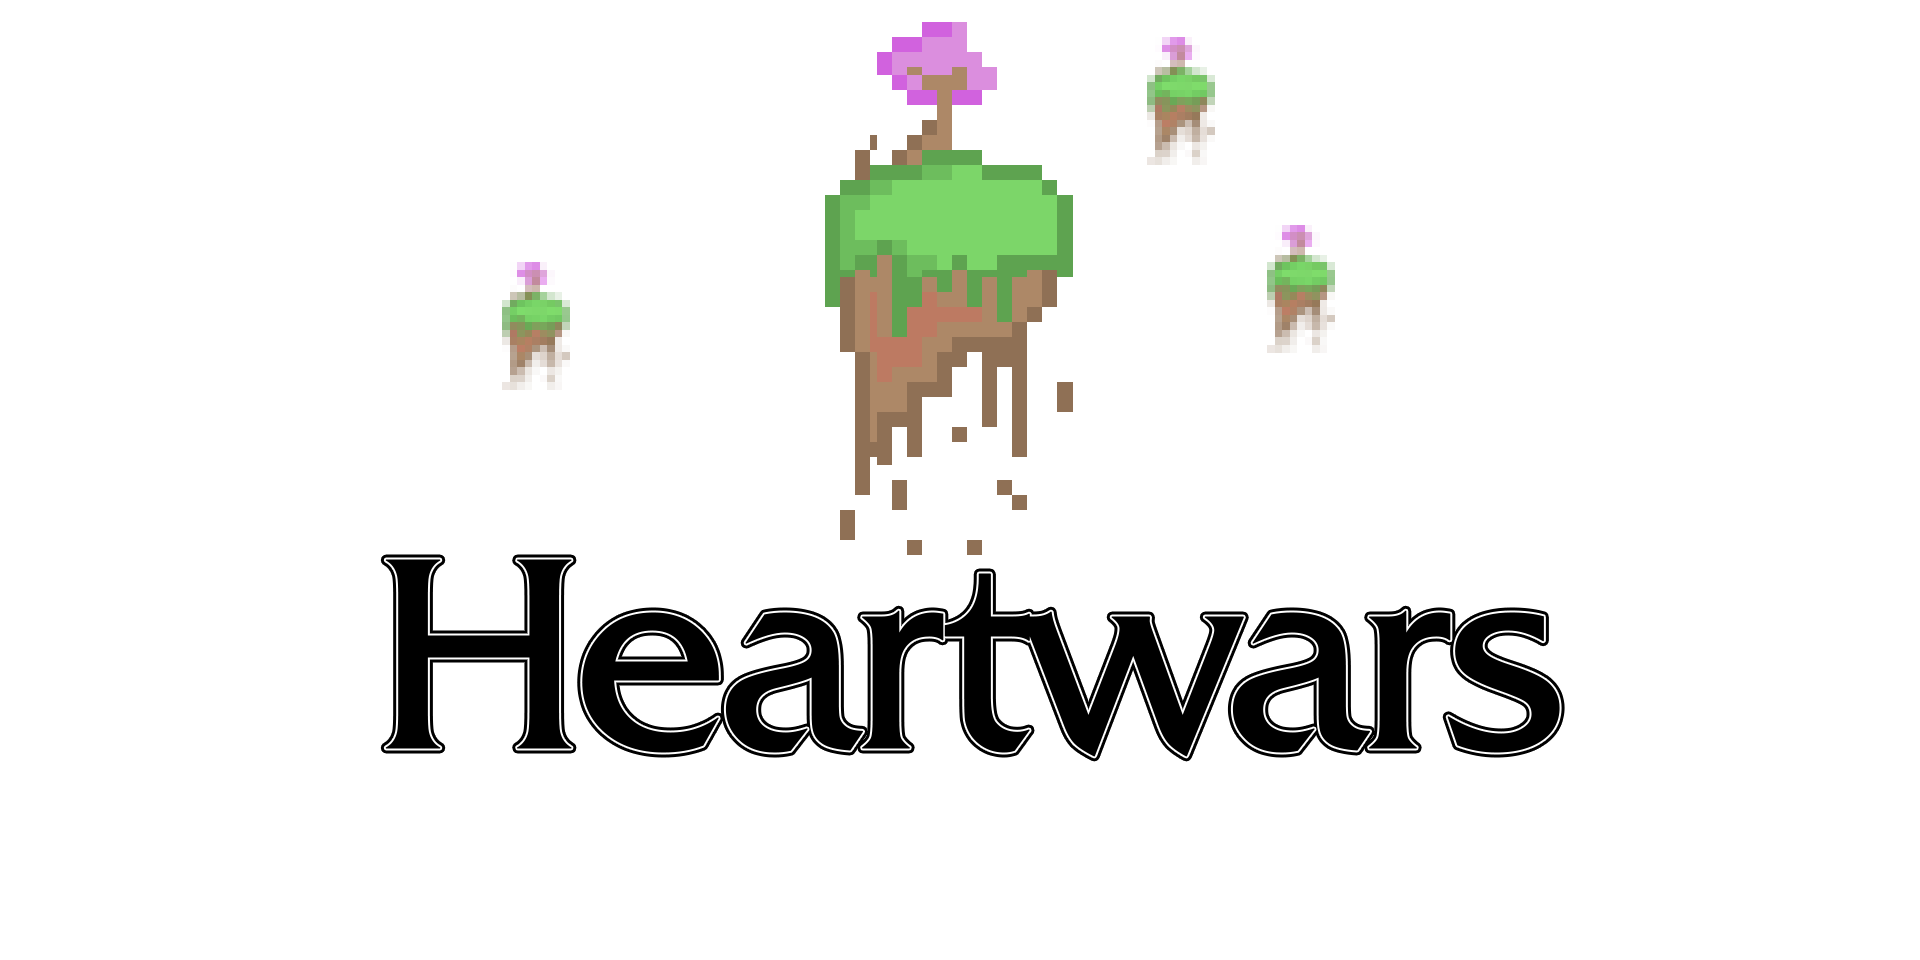 Heartwars